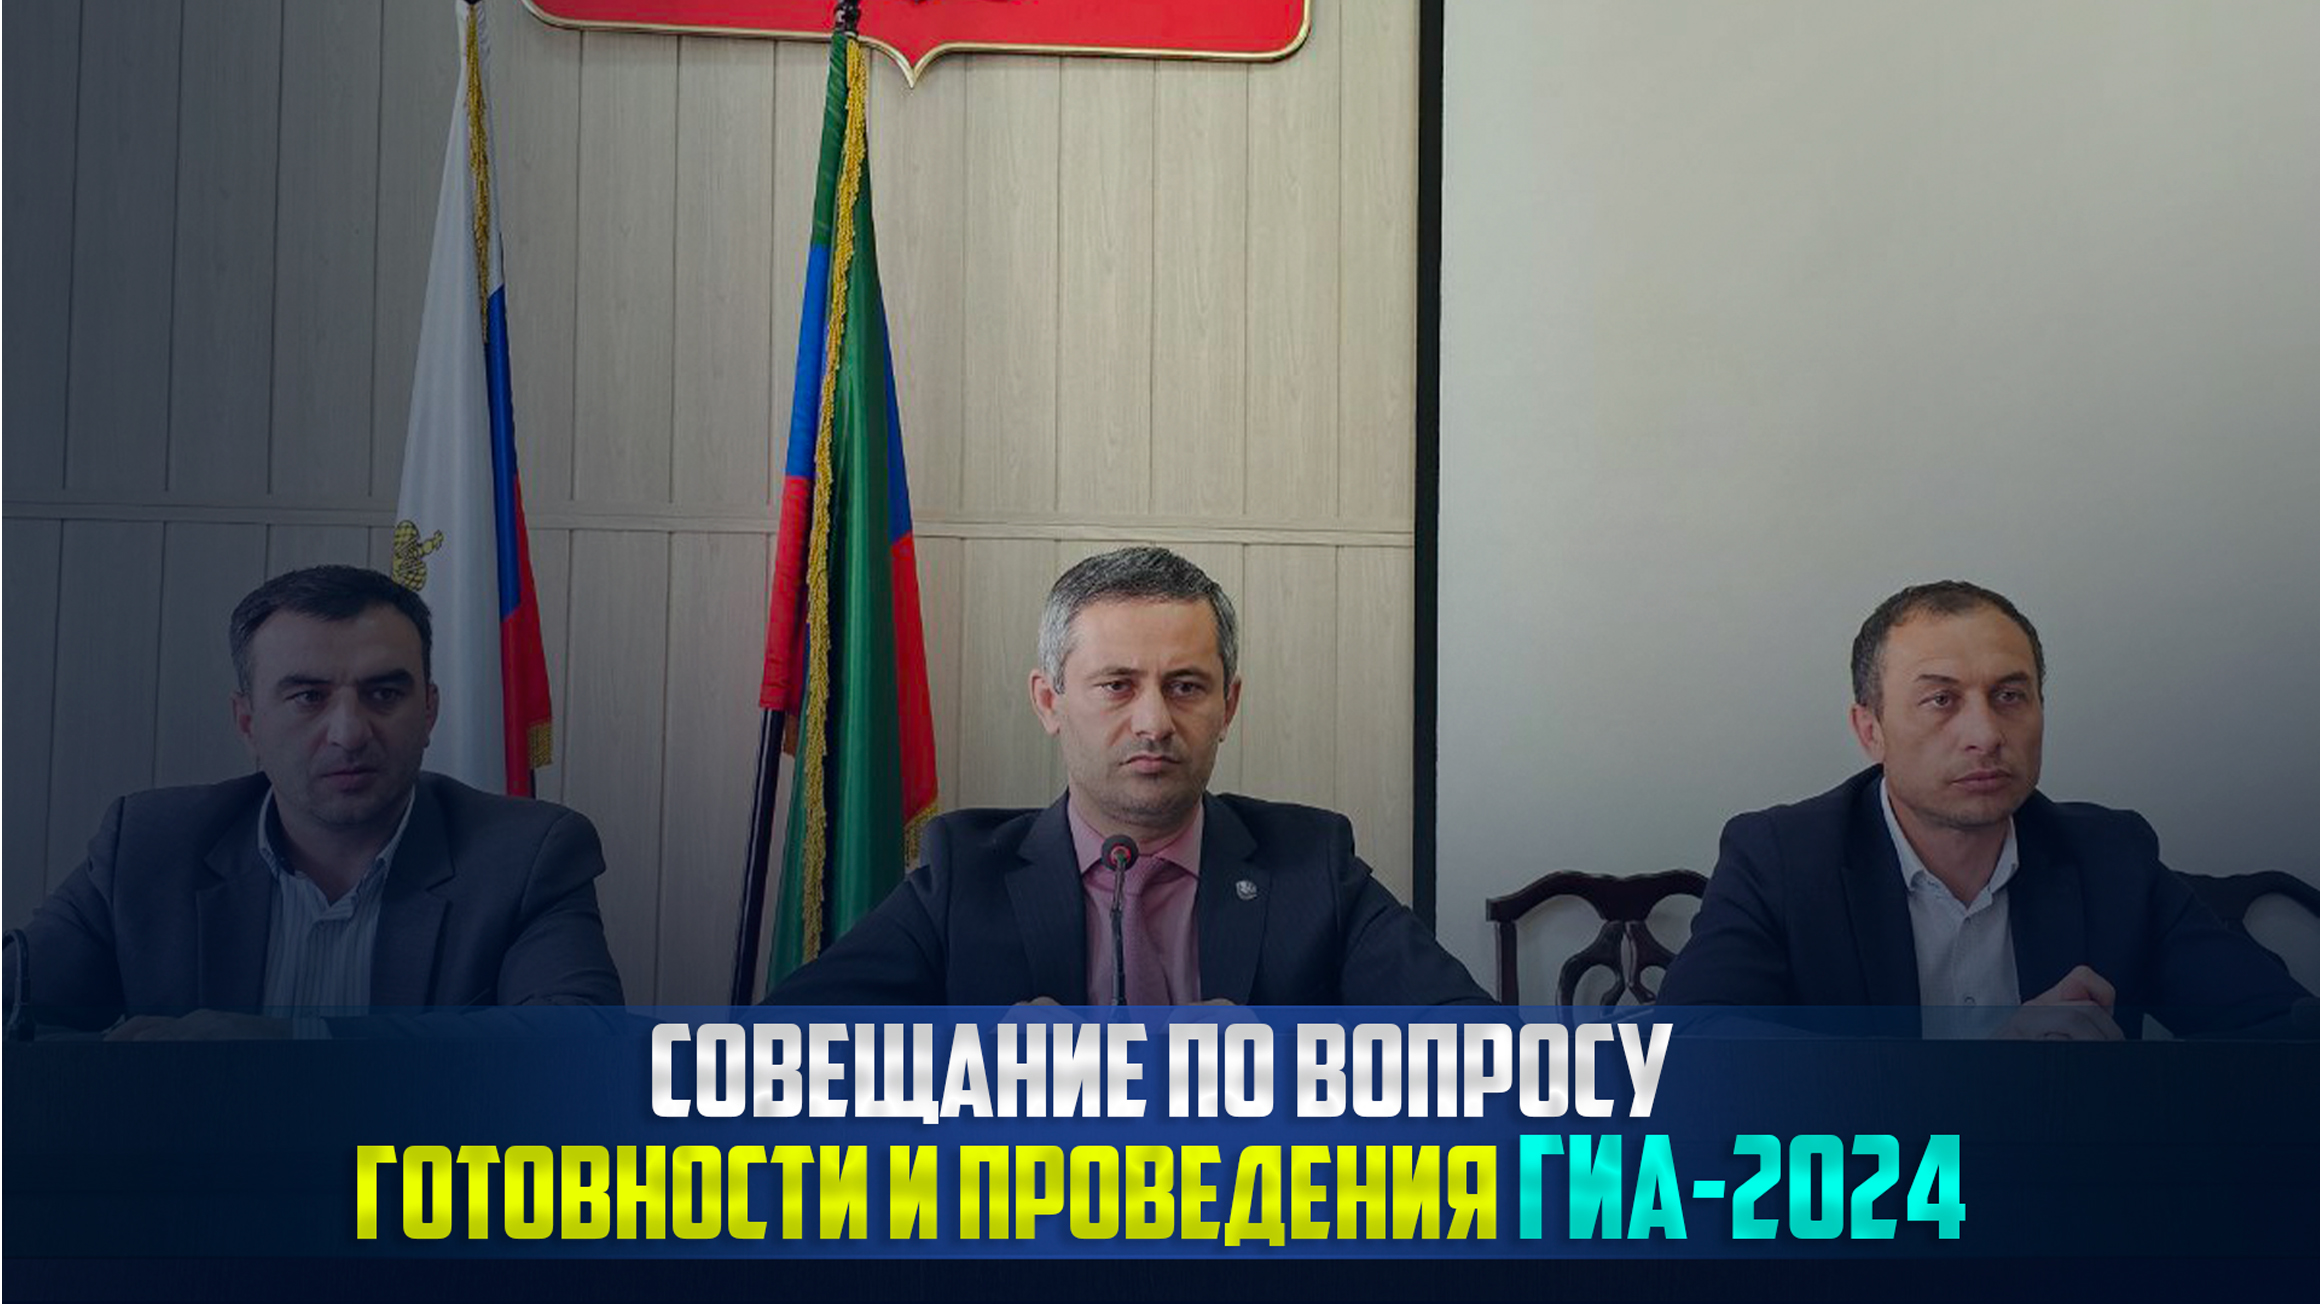 Требования к проведению ГИА 2024 в Ботлихском р-не обсудил на совещании глава района Руслан Гамзатов